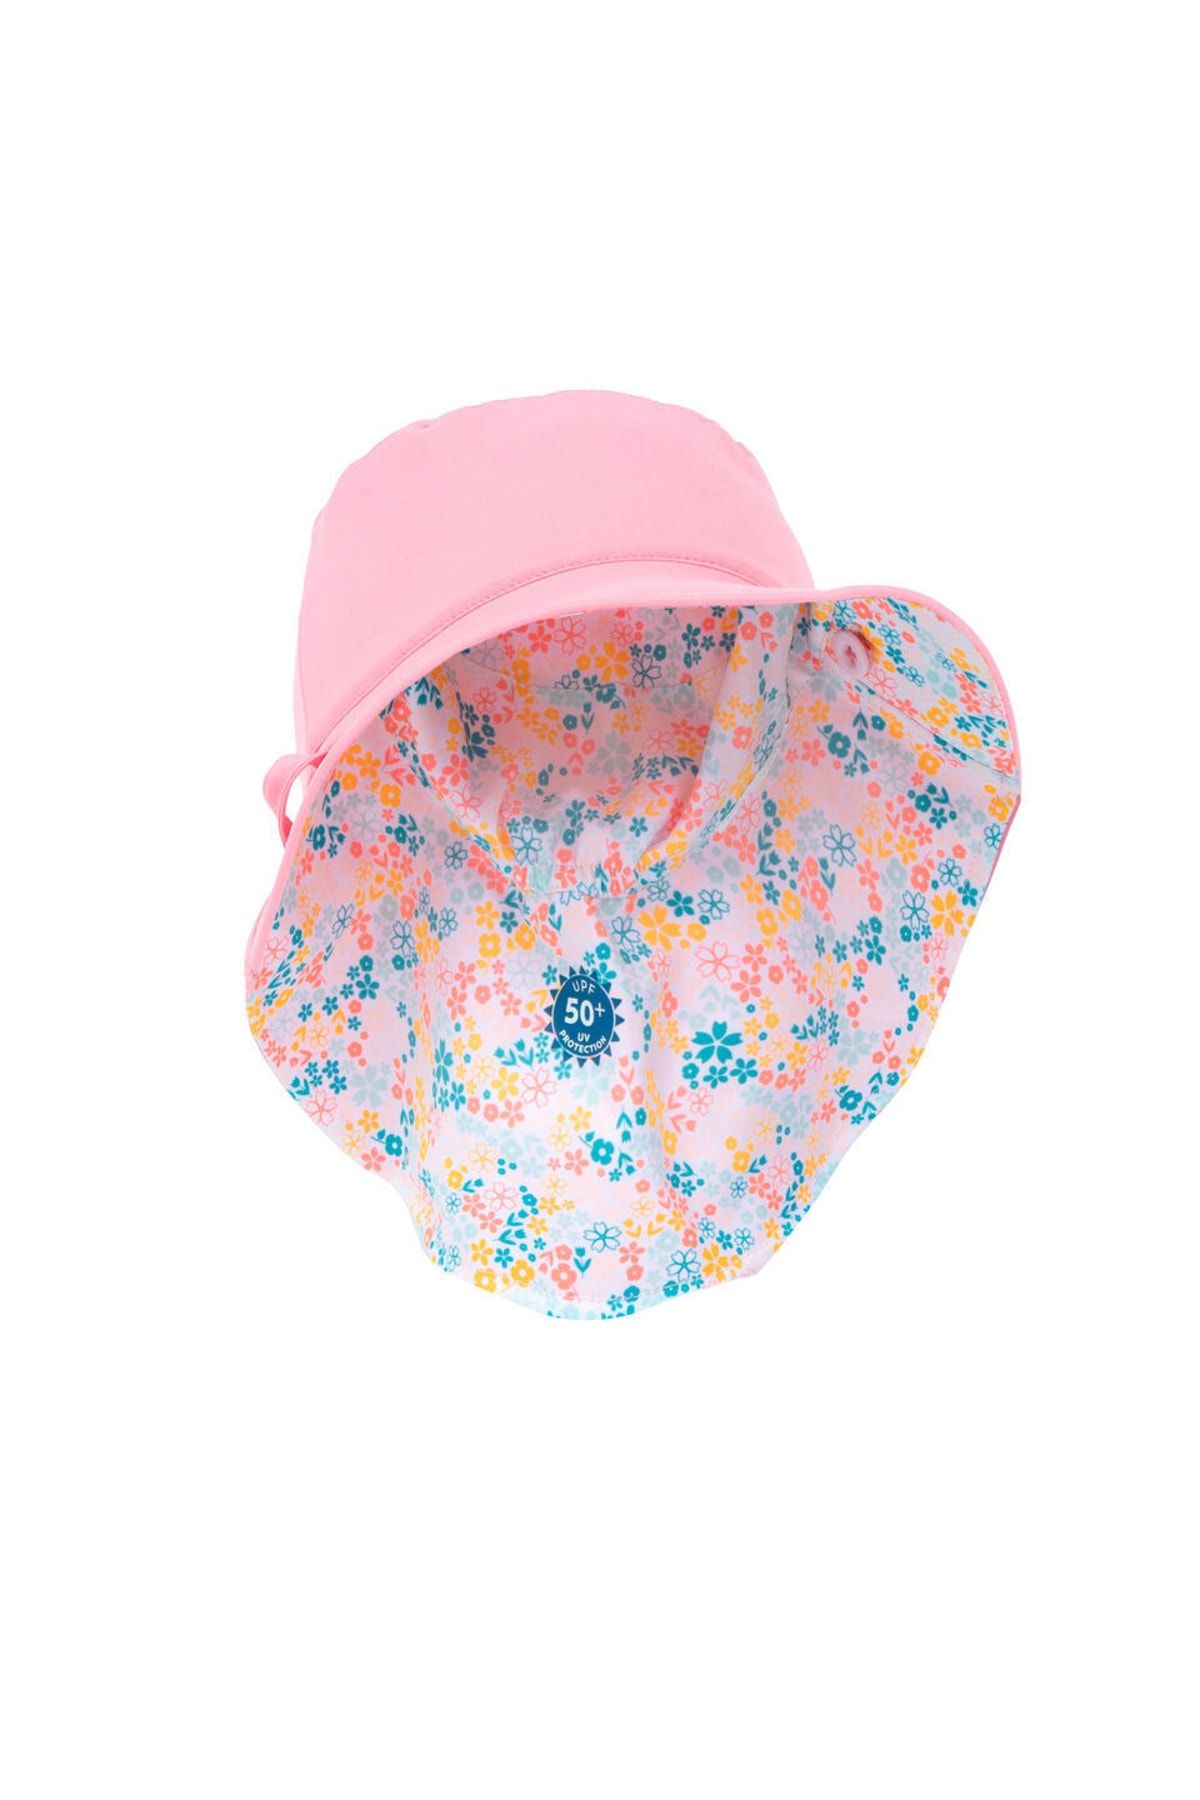 Decathlon Bebek Şapkası - Uv Korumalı Şapka - Çocuk Şapka - Çift Taraflı- Pembe / Çiçek Baskılı